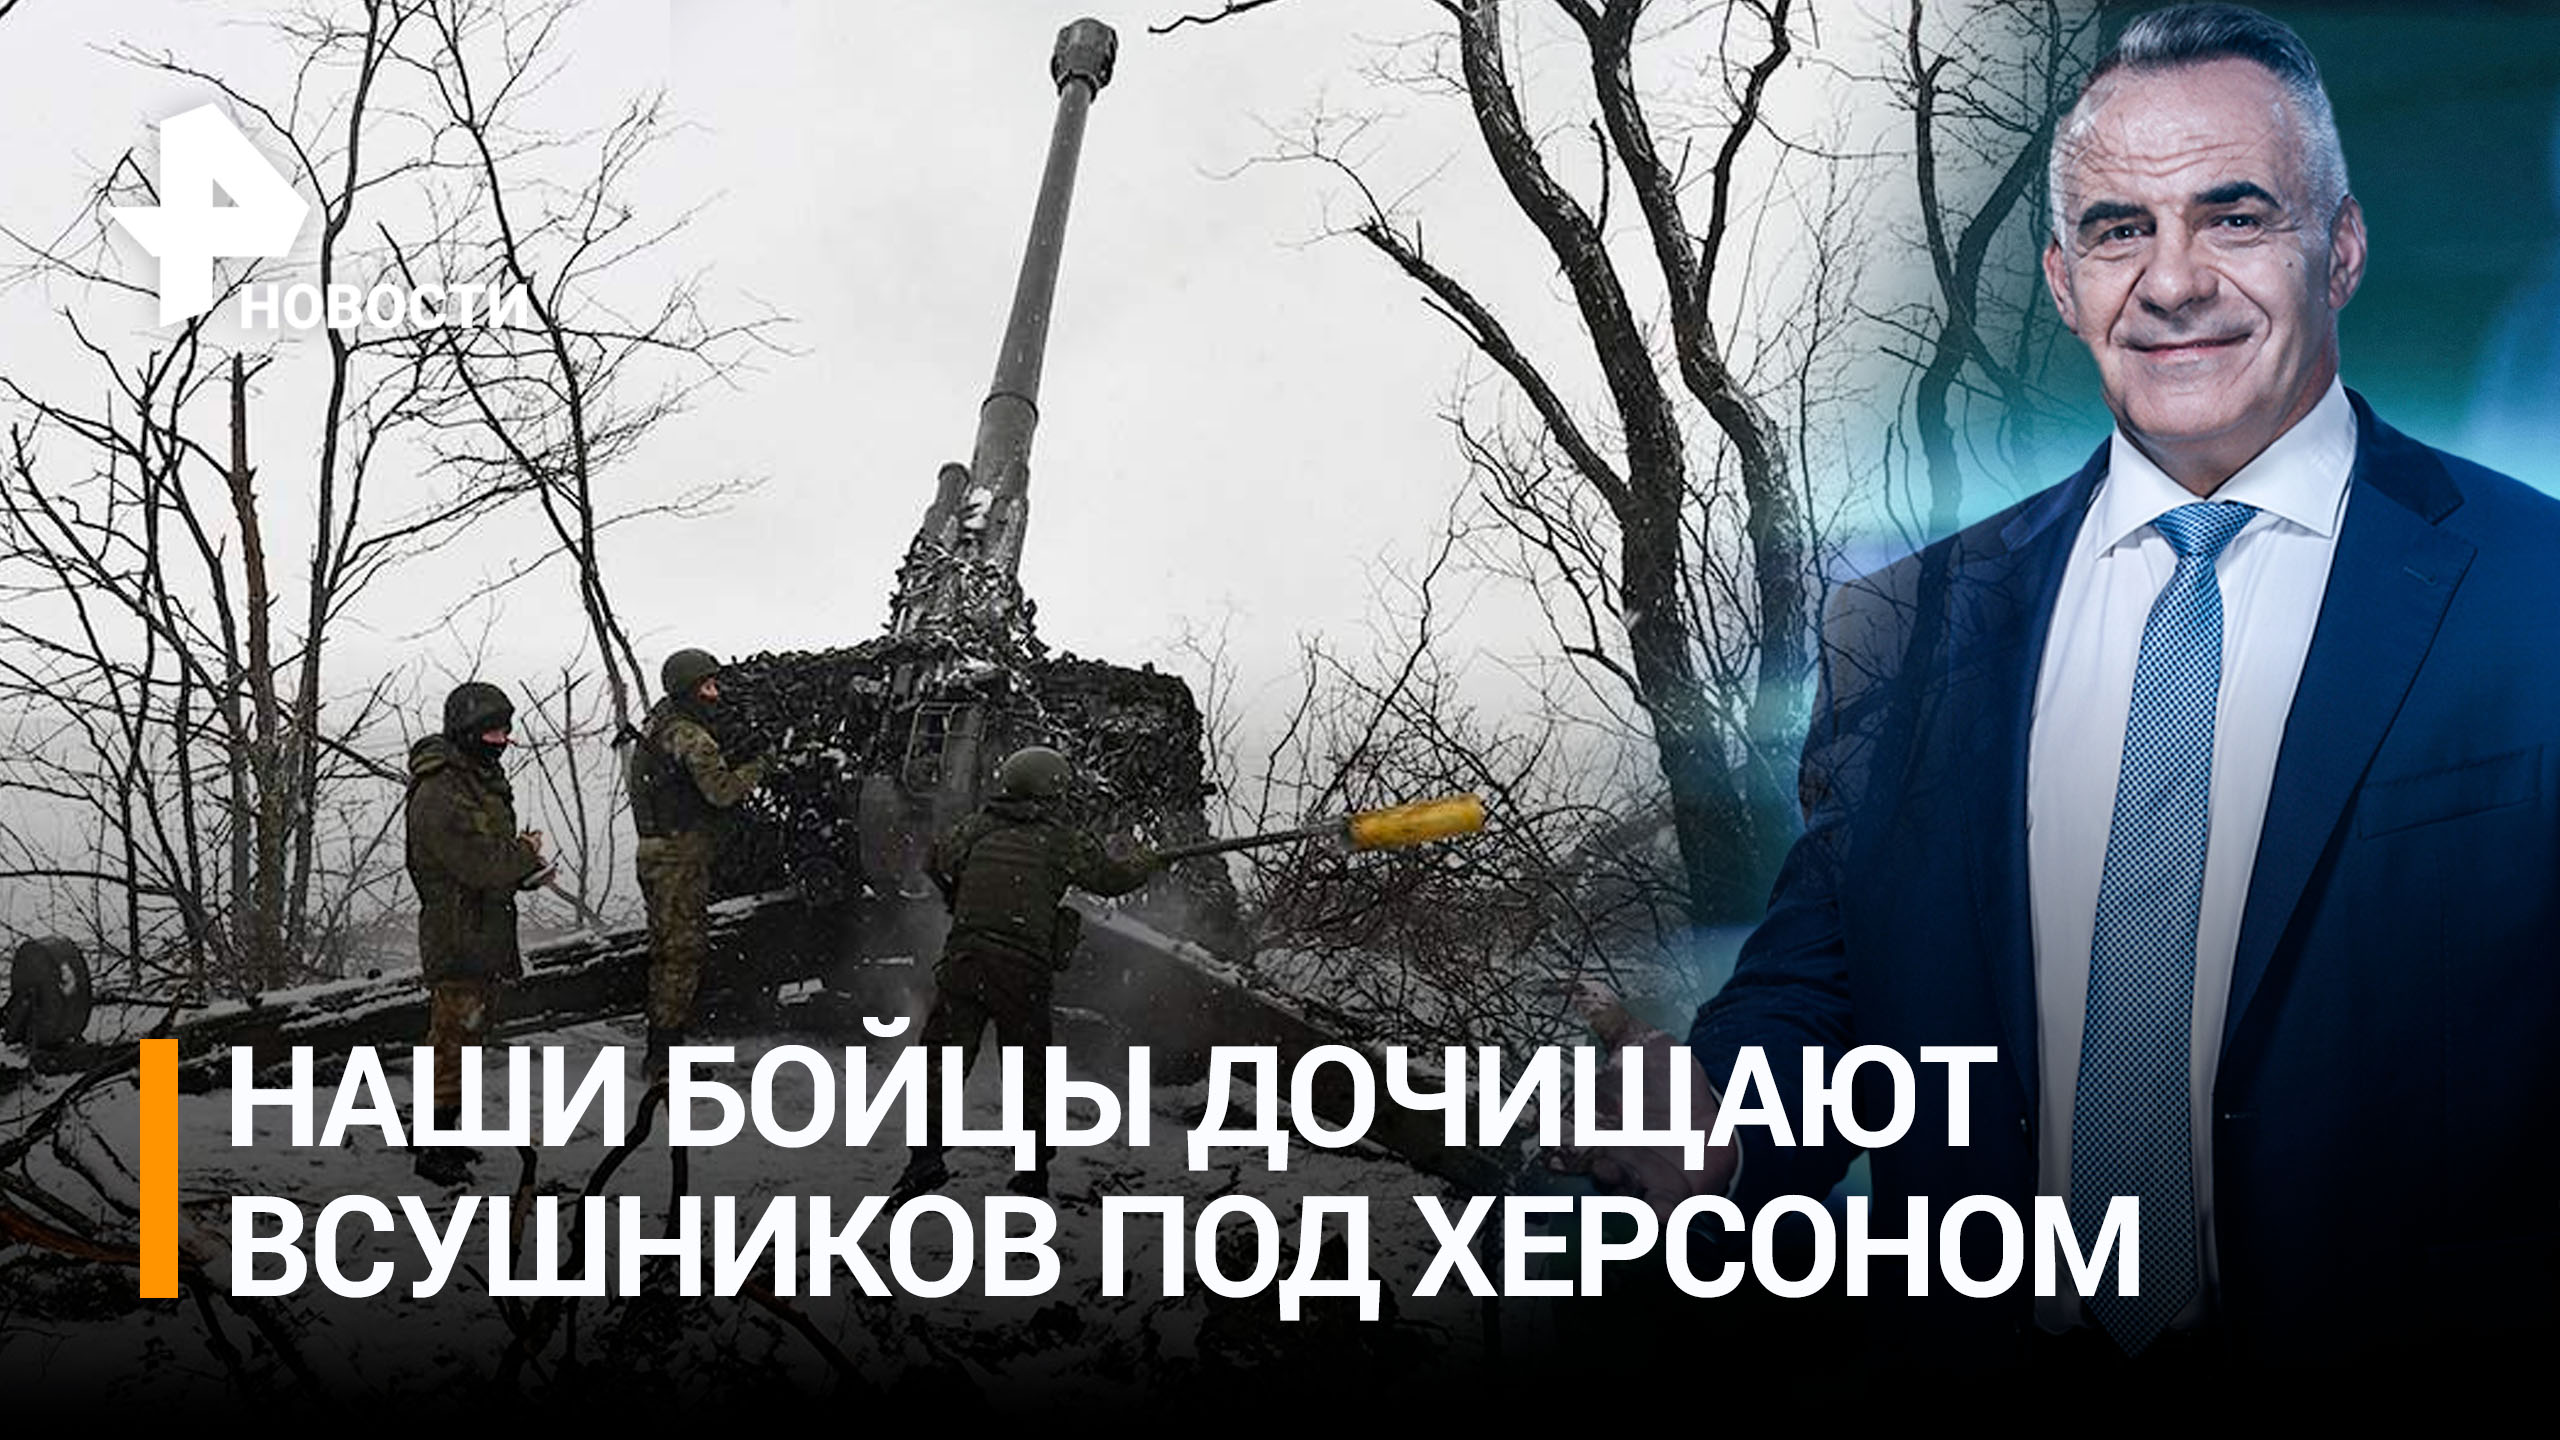 Армия России уничтожает последние силы ВСУ под Херсоном / ИТОГИ с Петром Марченко